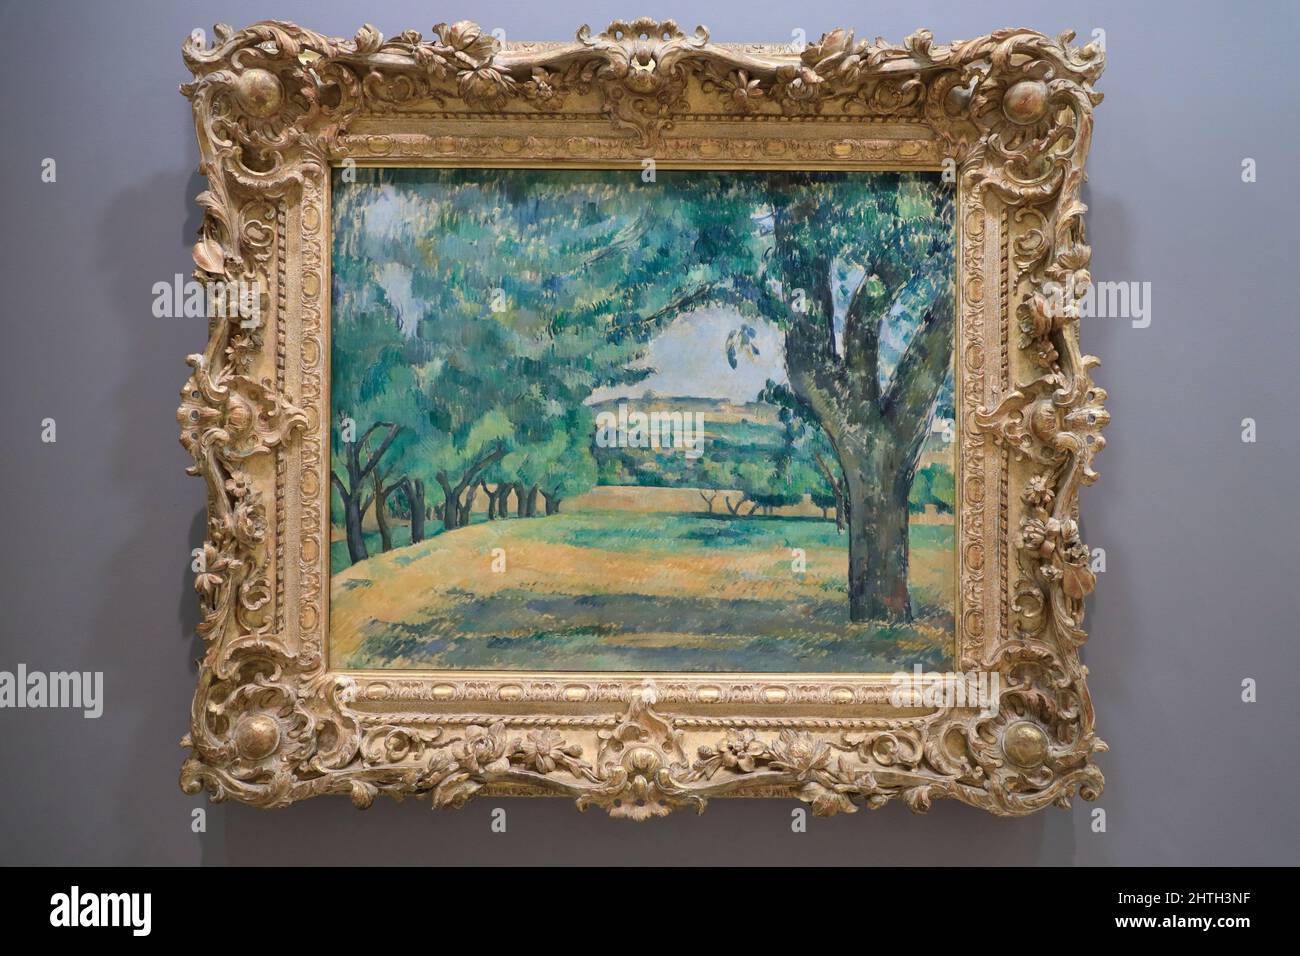 L'Hermitage de Camille Pissarro à Pontoise (les châteaux de l'Hermitage, Pontoise) est exposé au Solomon R.Guggenheim Museum.New York City.New York.USA Banque D'Images